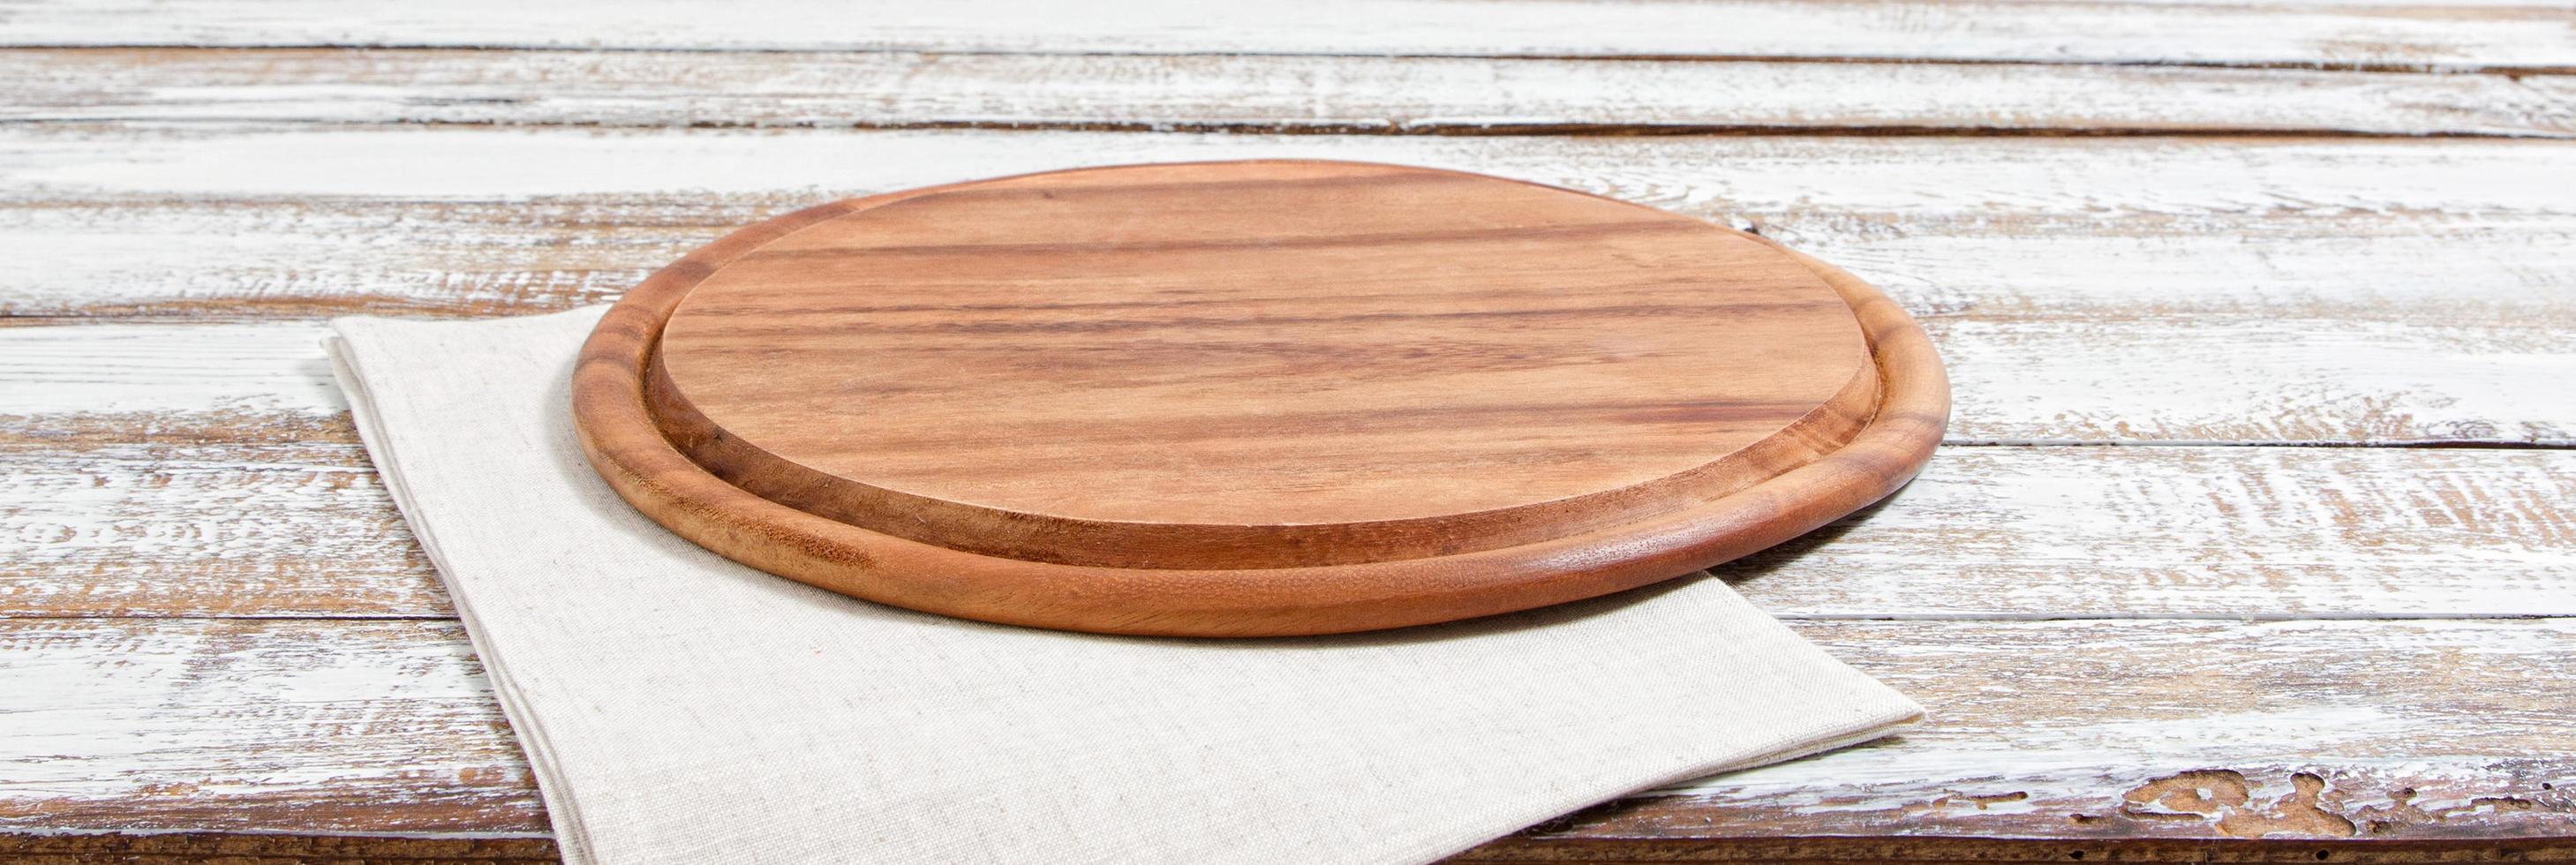 leeg pizzabord op lege houten tafel met tafelkleed, servet - bovenaanzicht foto